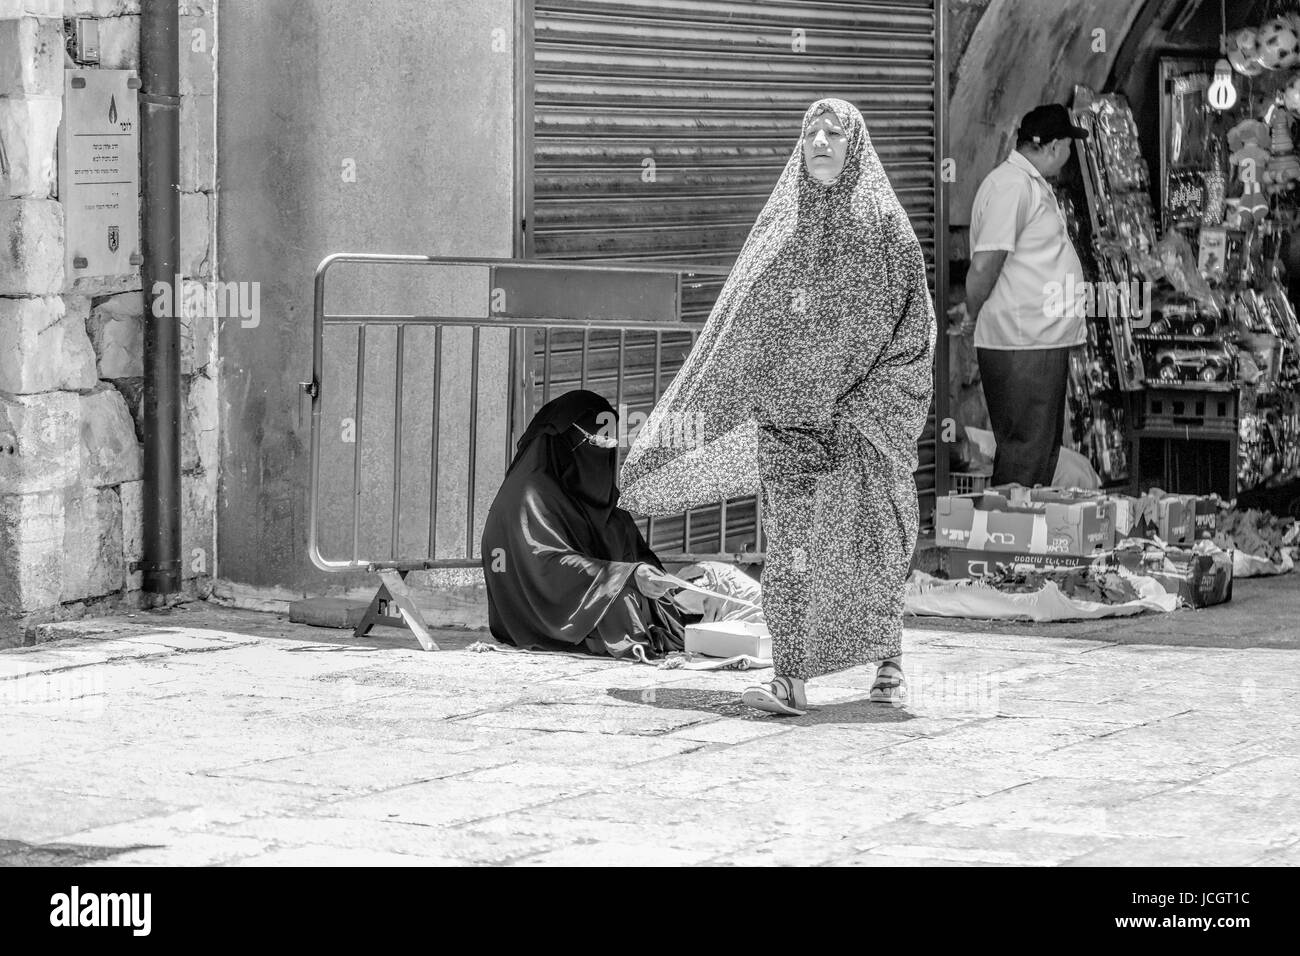 Femme assise avec un NIQAB, un voile intégral et d'une femme marche dans un tchador, une robe traditionnelle Muslem dans le quartier arabe, la vieille ville de Jérusalem, Israël. Banque D'Images